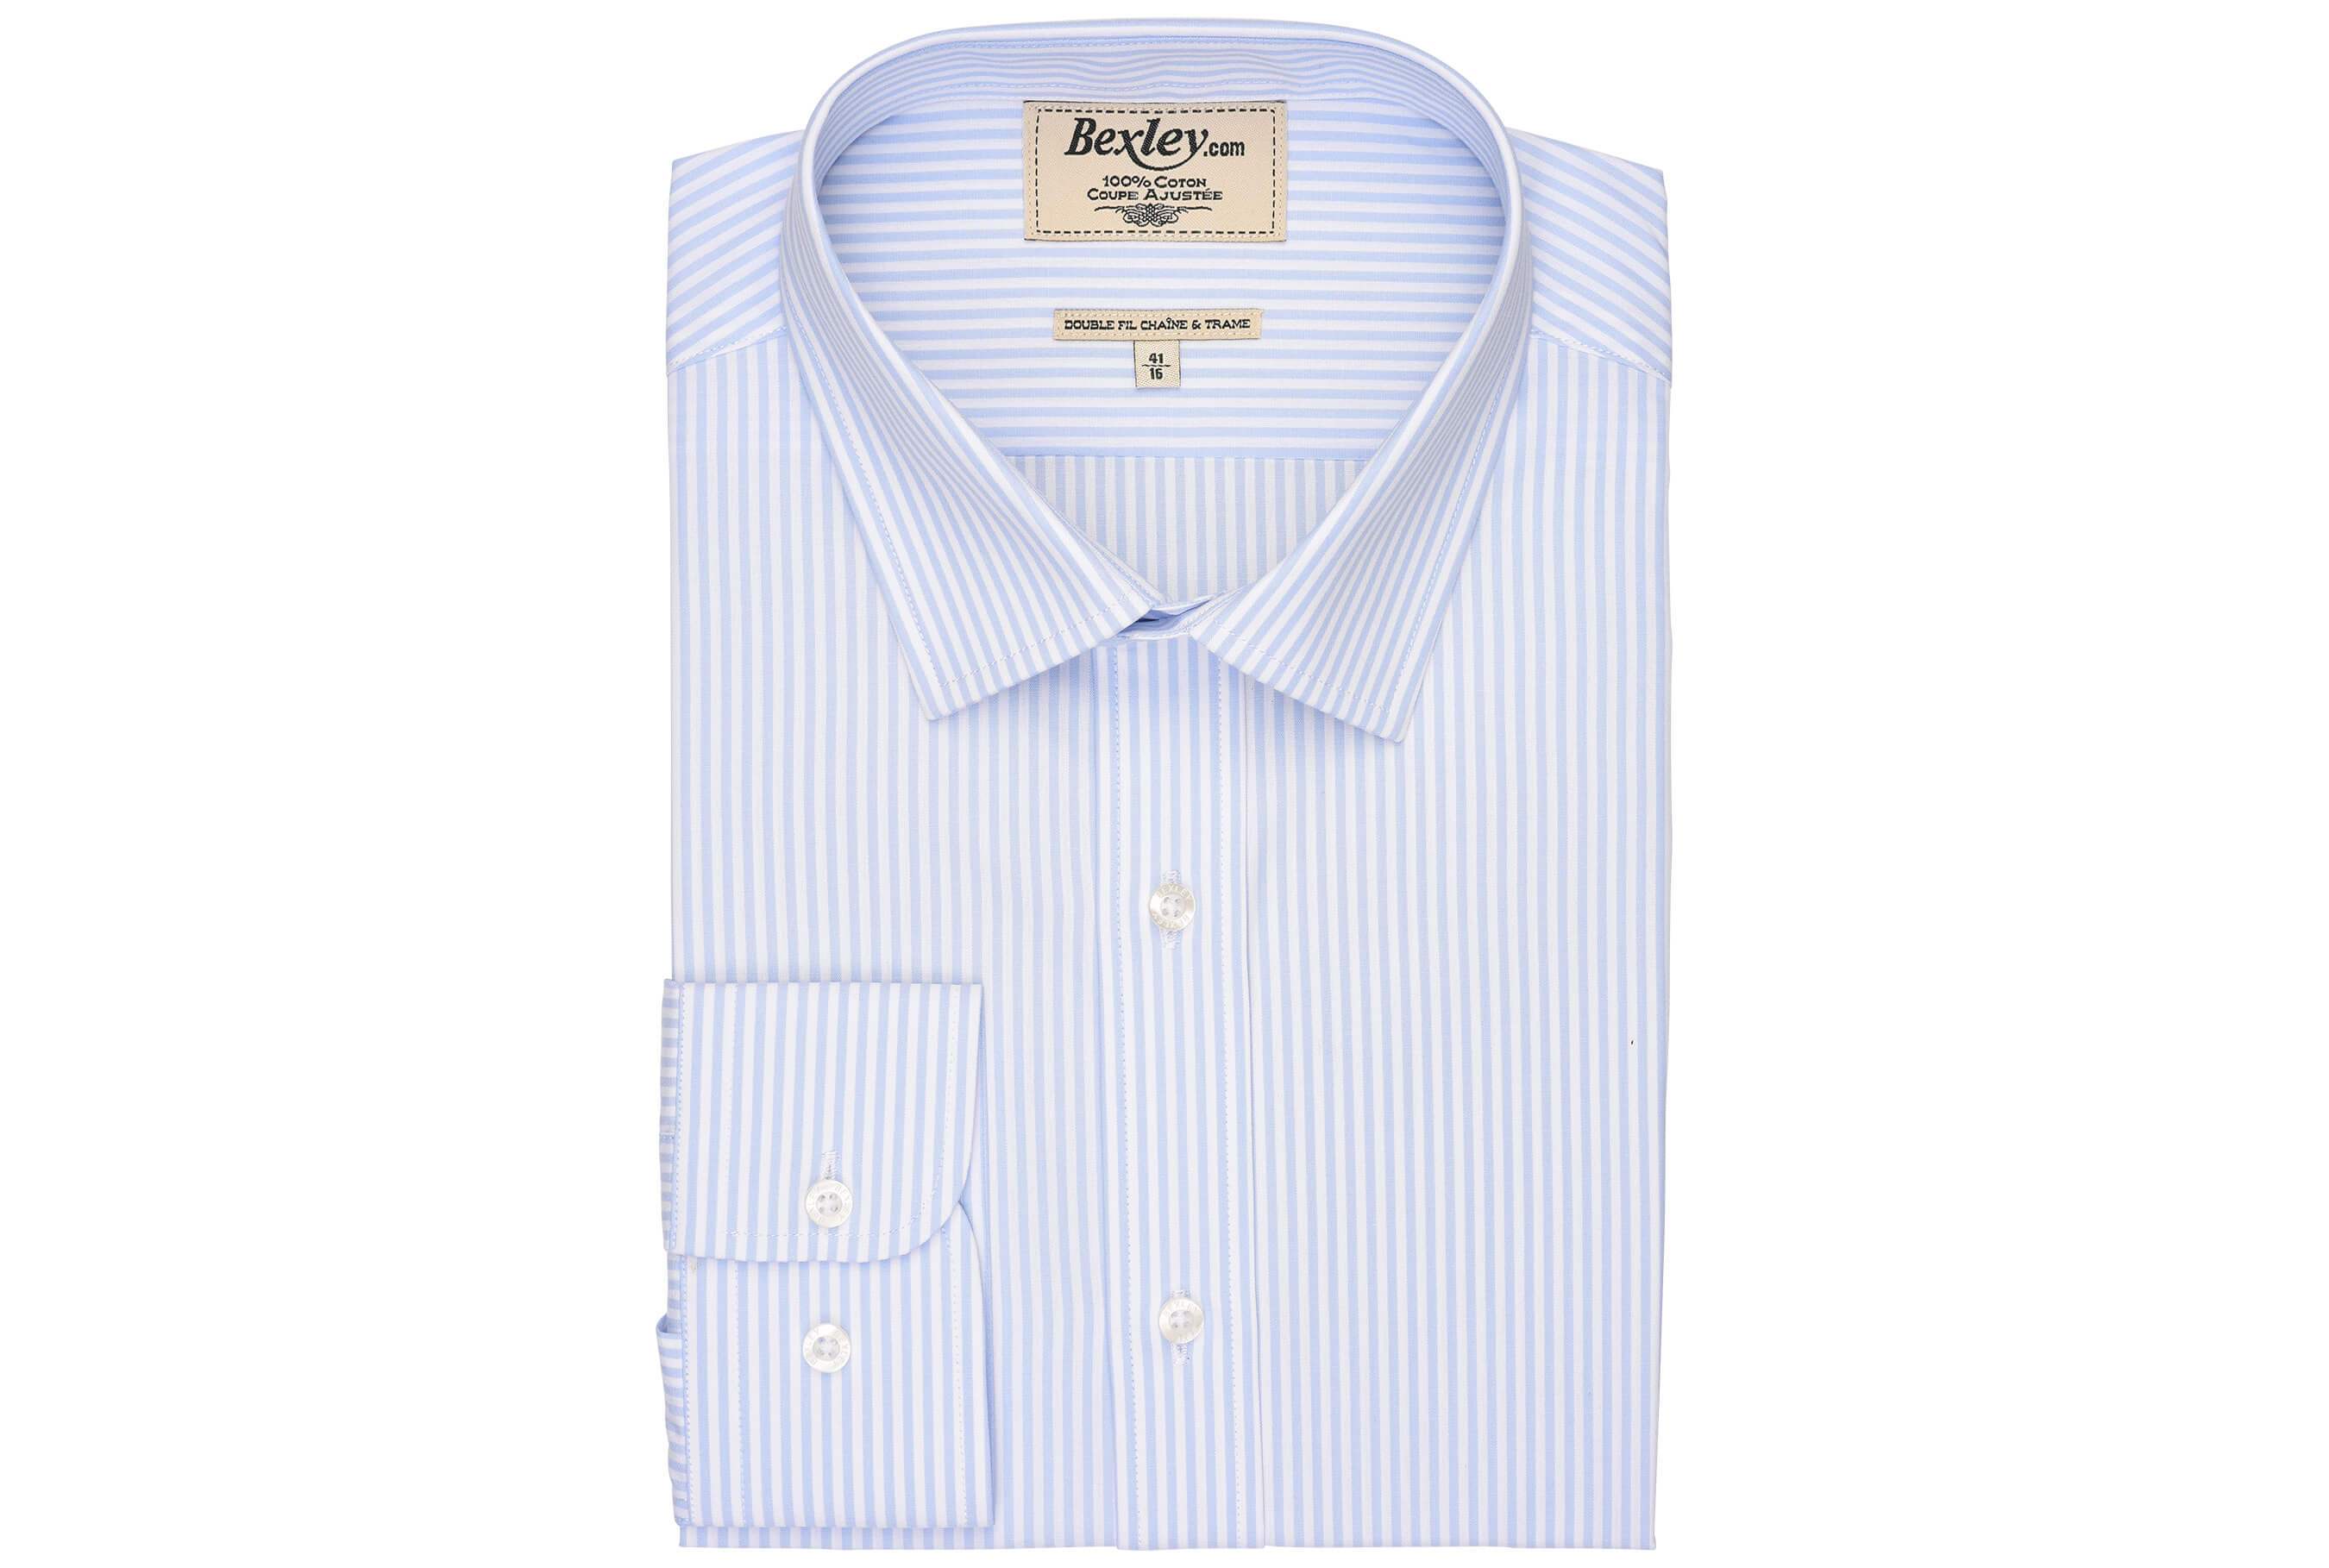 bexley chemise homme 100% coton, bleu clair et blanc, manches longues